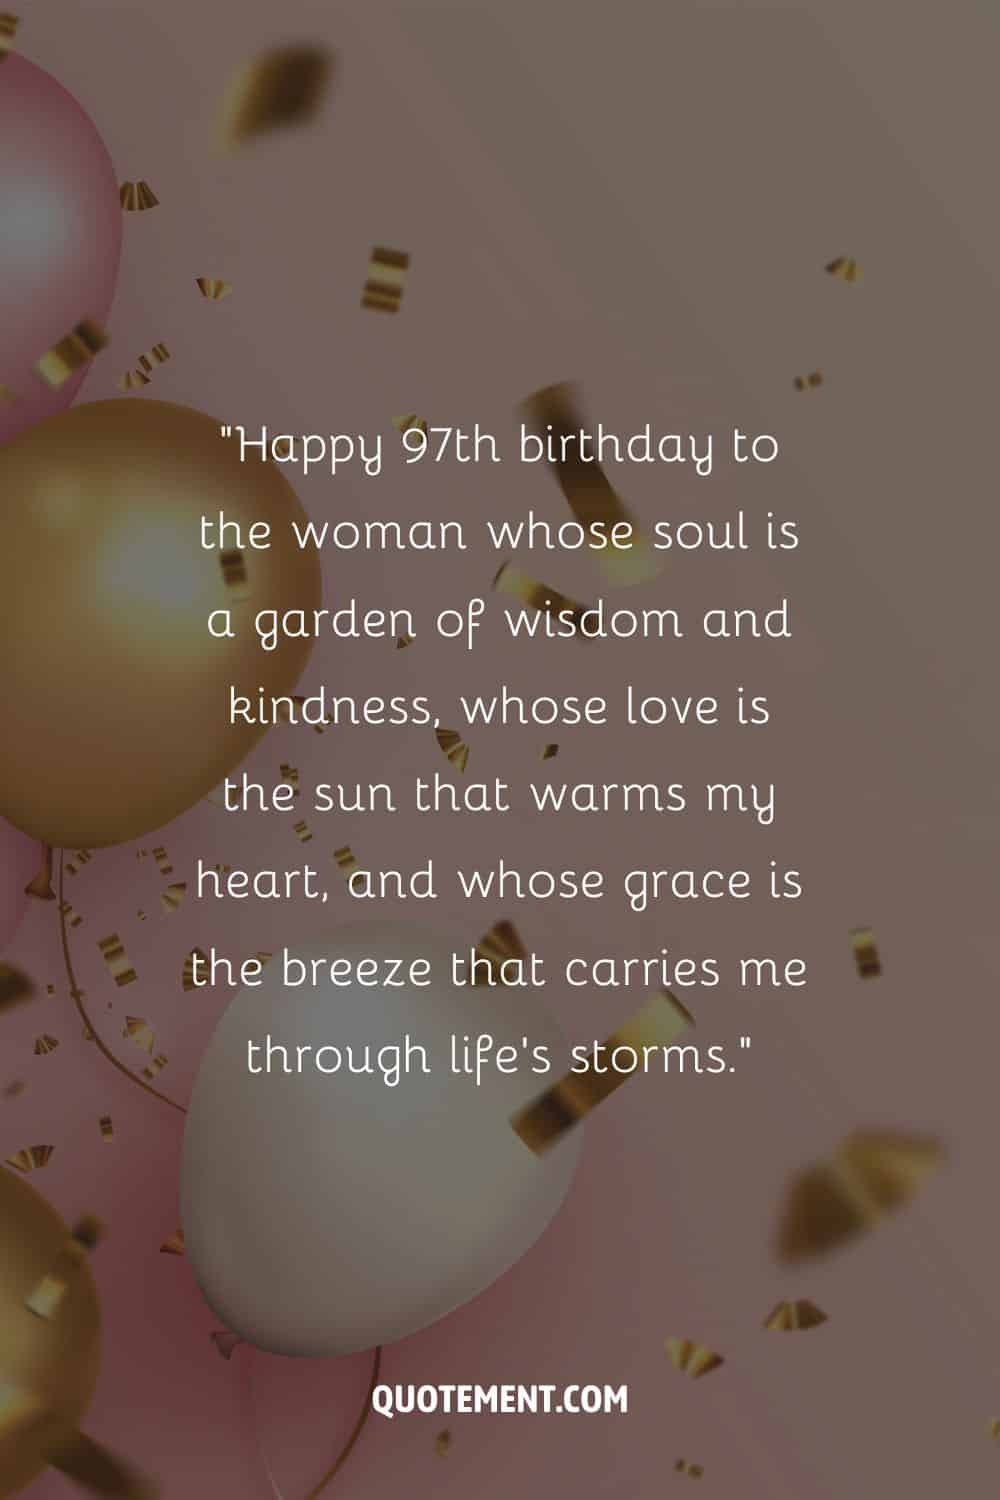 Mensaje conmovedor para el 97 cumpleaños de una madre y globos y confeti de fondo, también